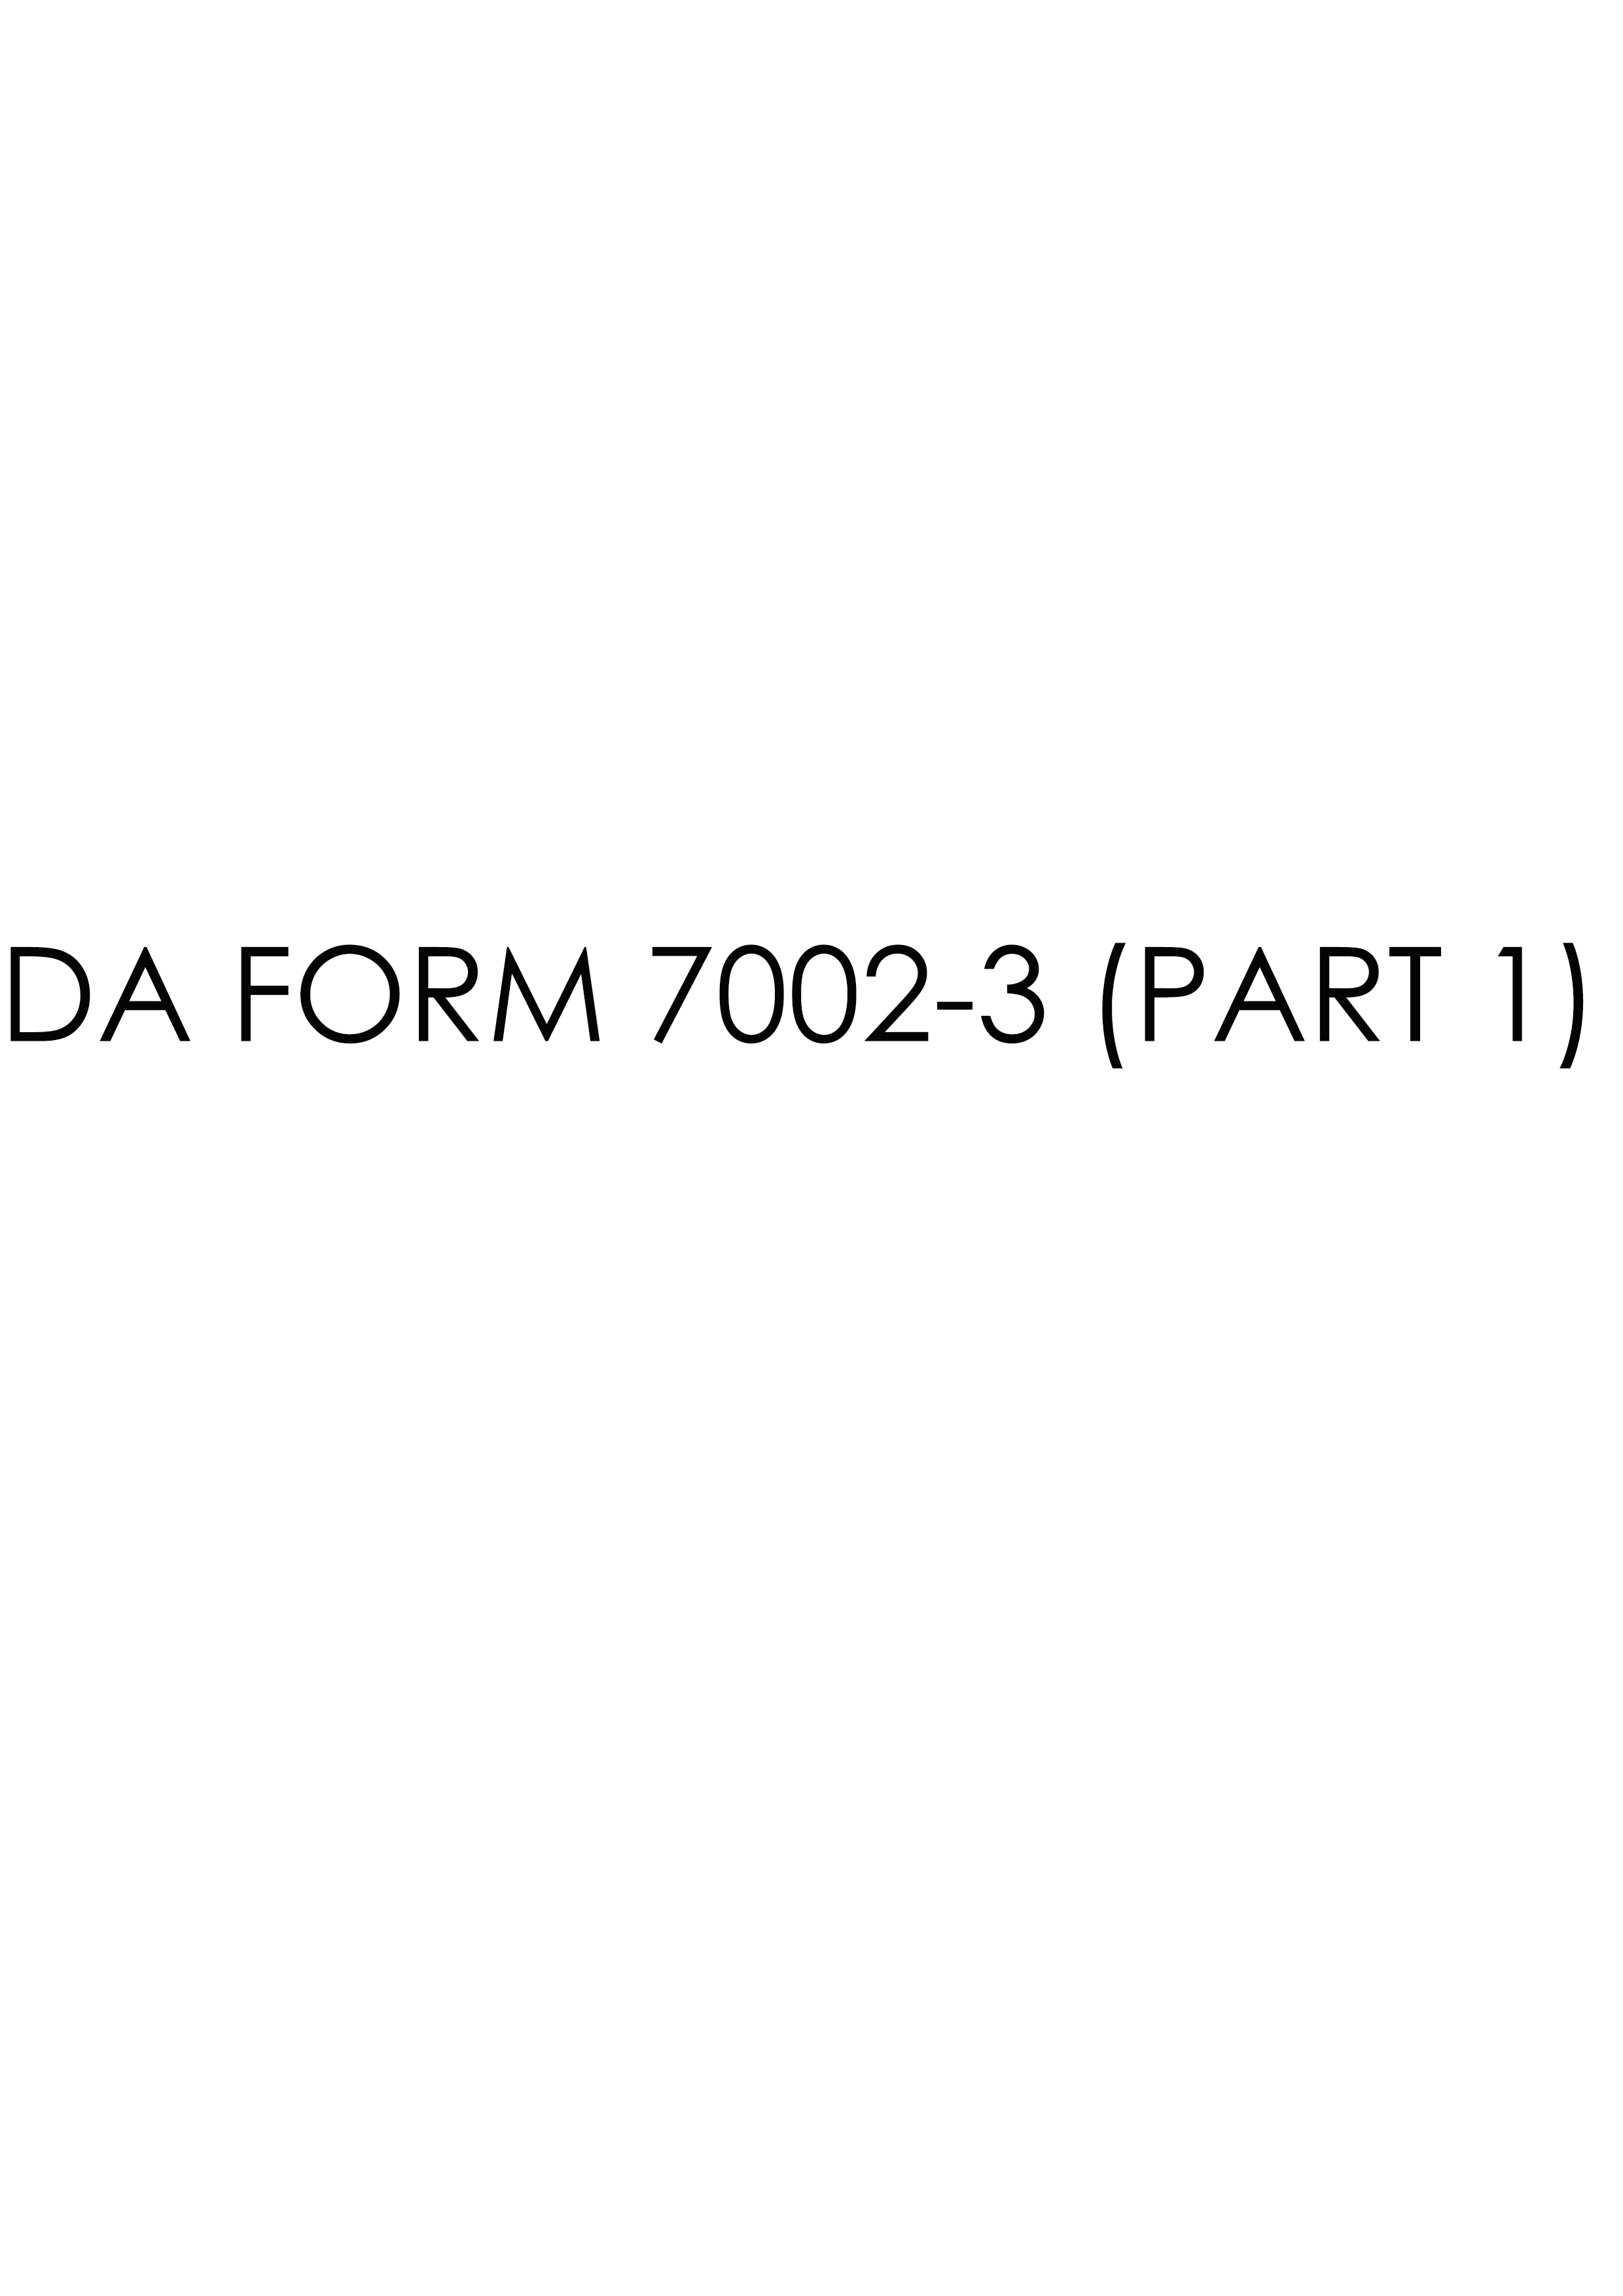 da Form 7002-3 (PART 1) fillable